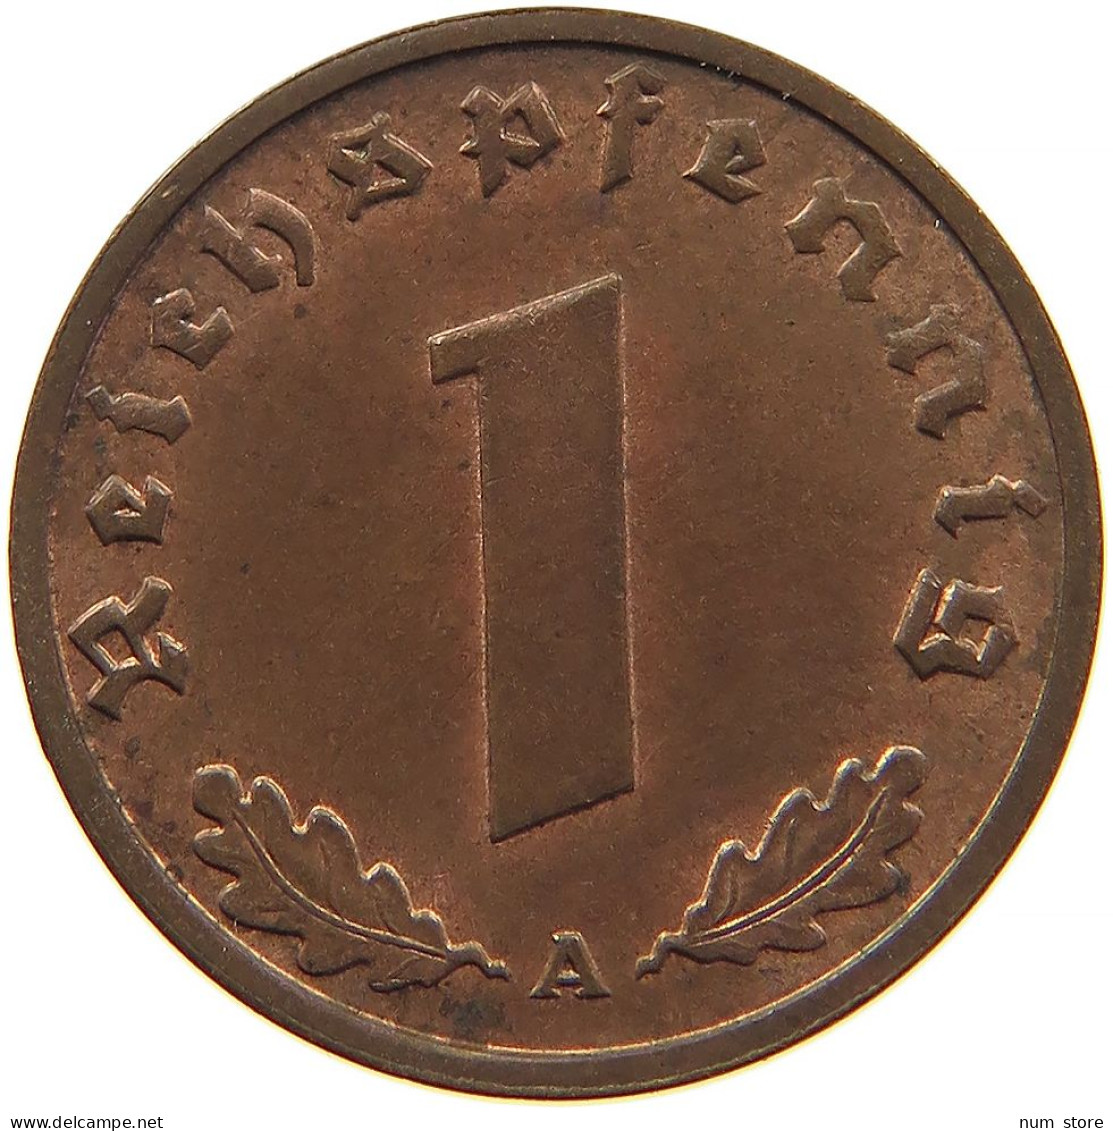 GERMANY 1 REICHSPFENNIG 1938 A #s096 0123 - 1 Reichspfennig